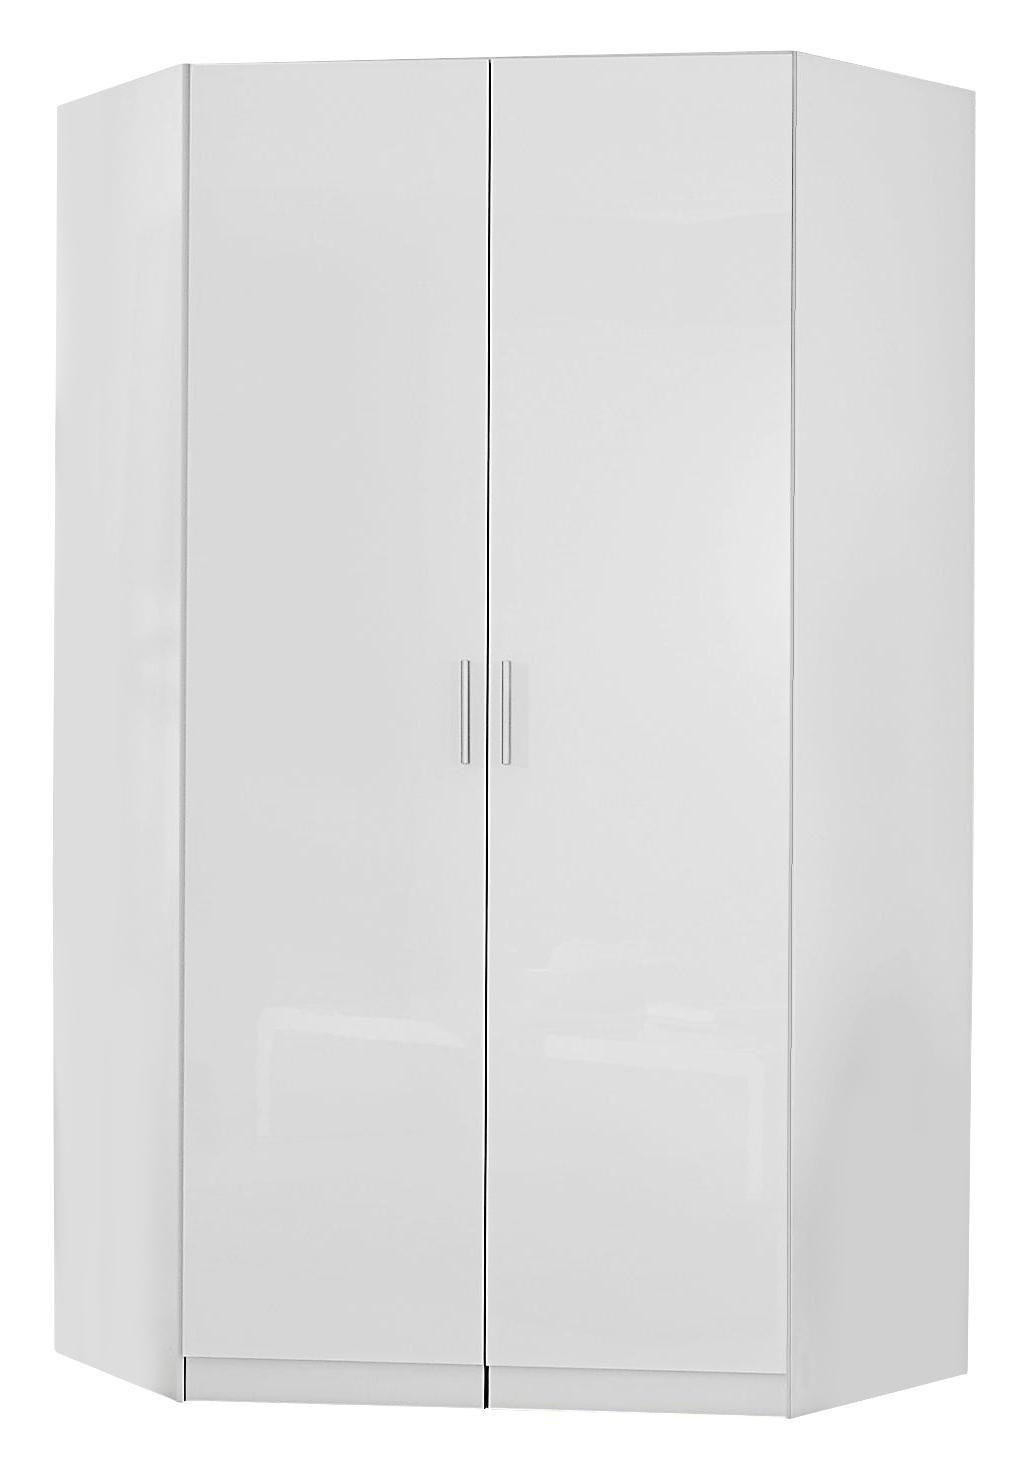 ECKSCHRANK 117/197/117 cm  - Weiß Hochglanz/Alufarben, Design, Holzwerkstoff/Kunststoff (117/197/117cm) - Carryhome